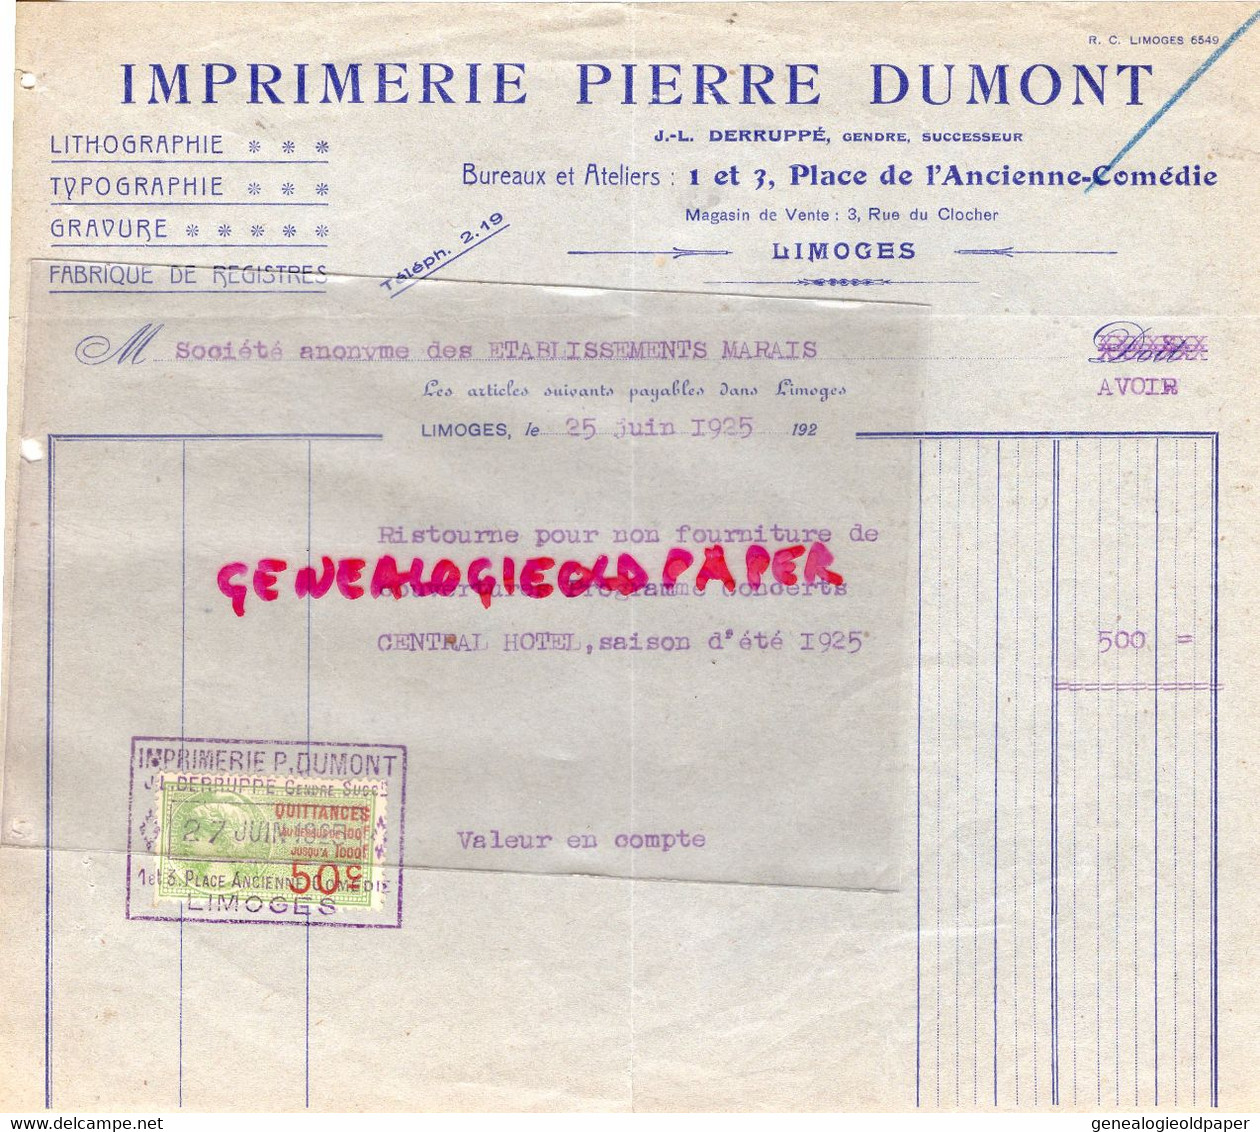 87- LIMOGES- RARE FACTURE IMPRIMERIE PIERRE DUMONT- J.L. DERRUPPE -1 PLACE ANCIENNE COMEDIE- LITHOGRAPHIE GRAVURE -1925 - Imprimerie & Papeterie